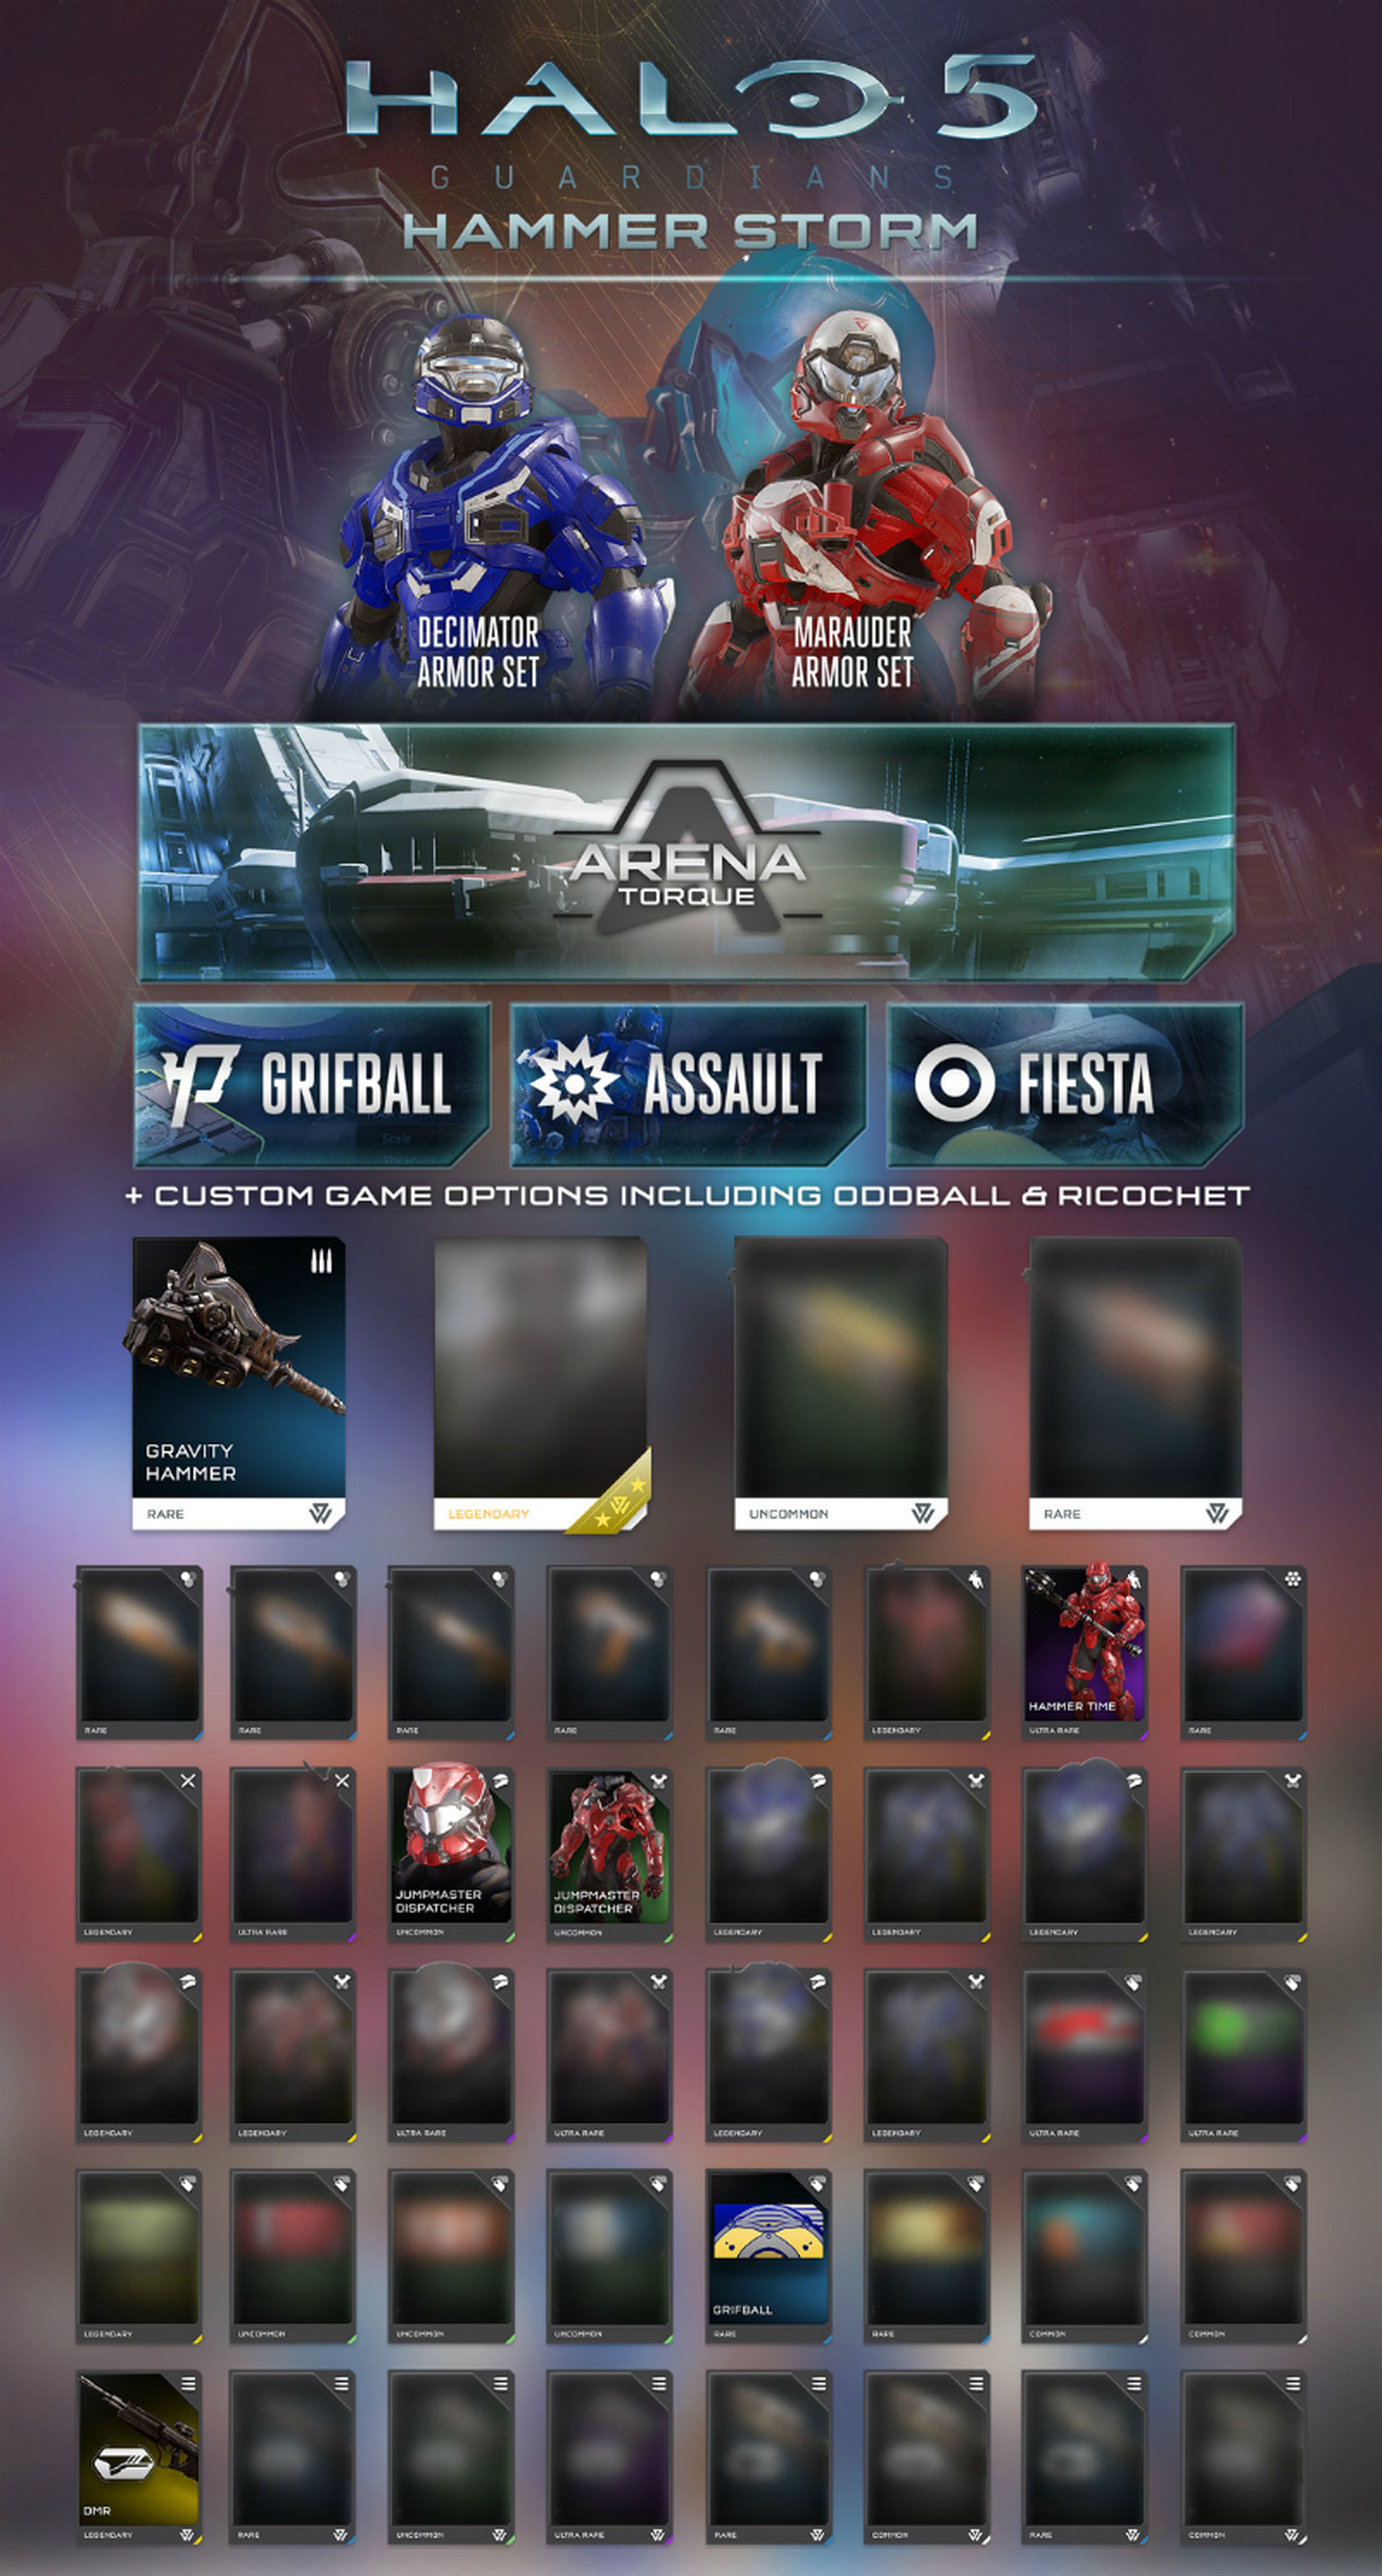 Halo 5 Guardians - Hammer Storm es su nueva actualización